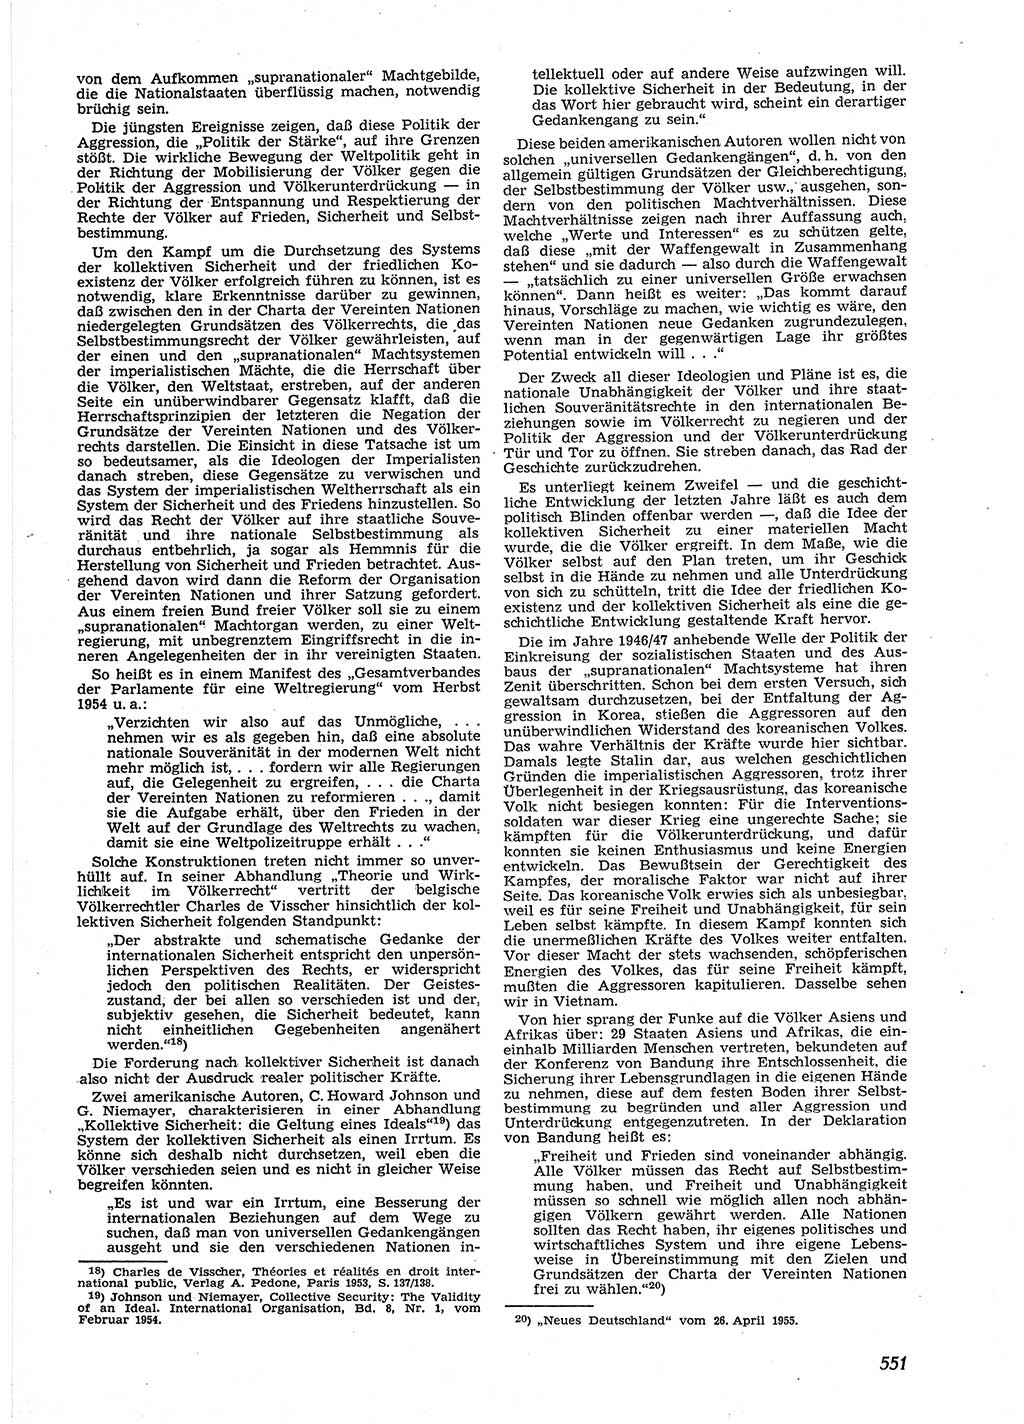 Neue Justiz (NJ), Zeitschrift für Recht und Rechtswissenschaft [Deutsche Demokratische Republik (DDR)], 9. Jahrgang 1955, Seite 551 (NJ DDR 1955, S. 551)